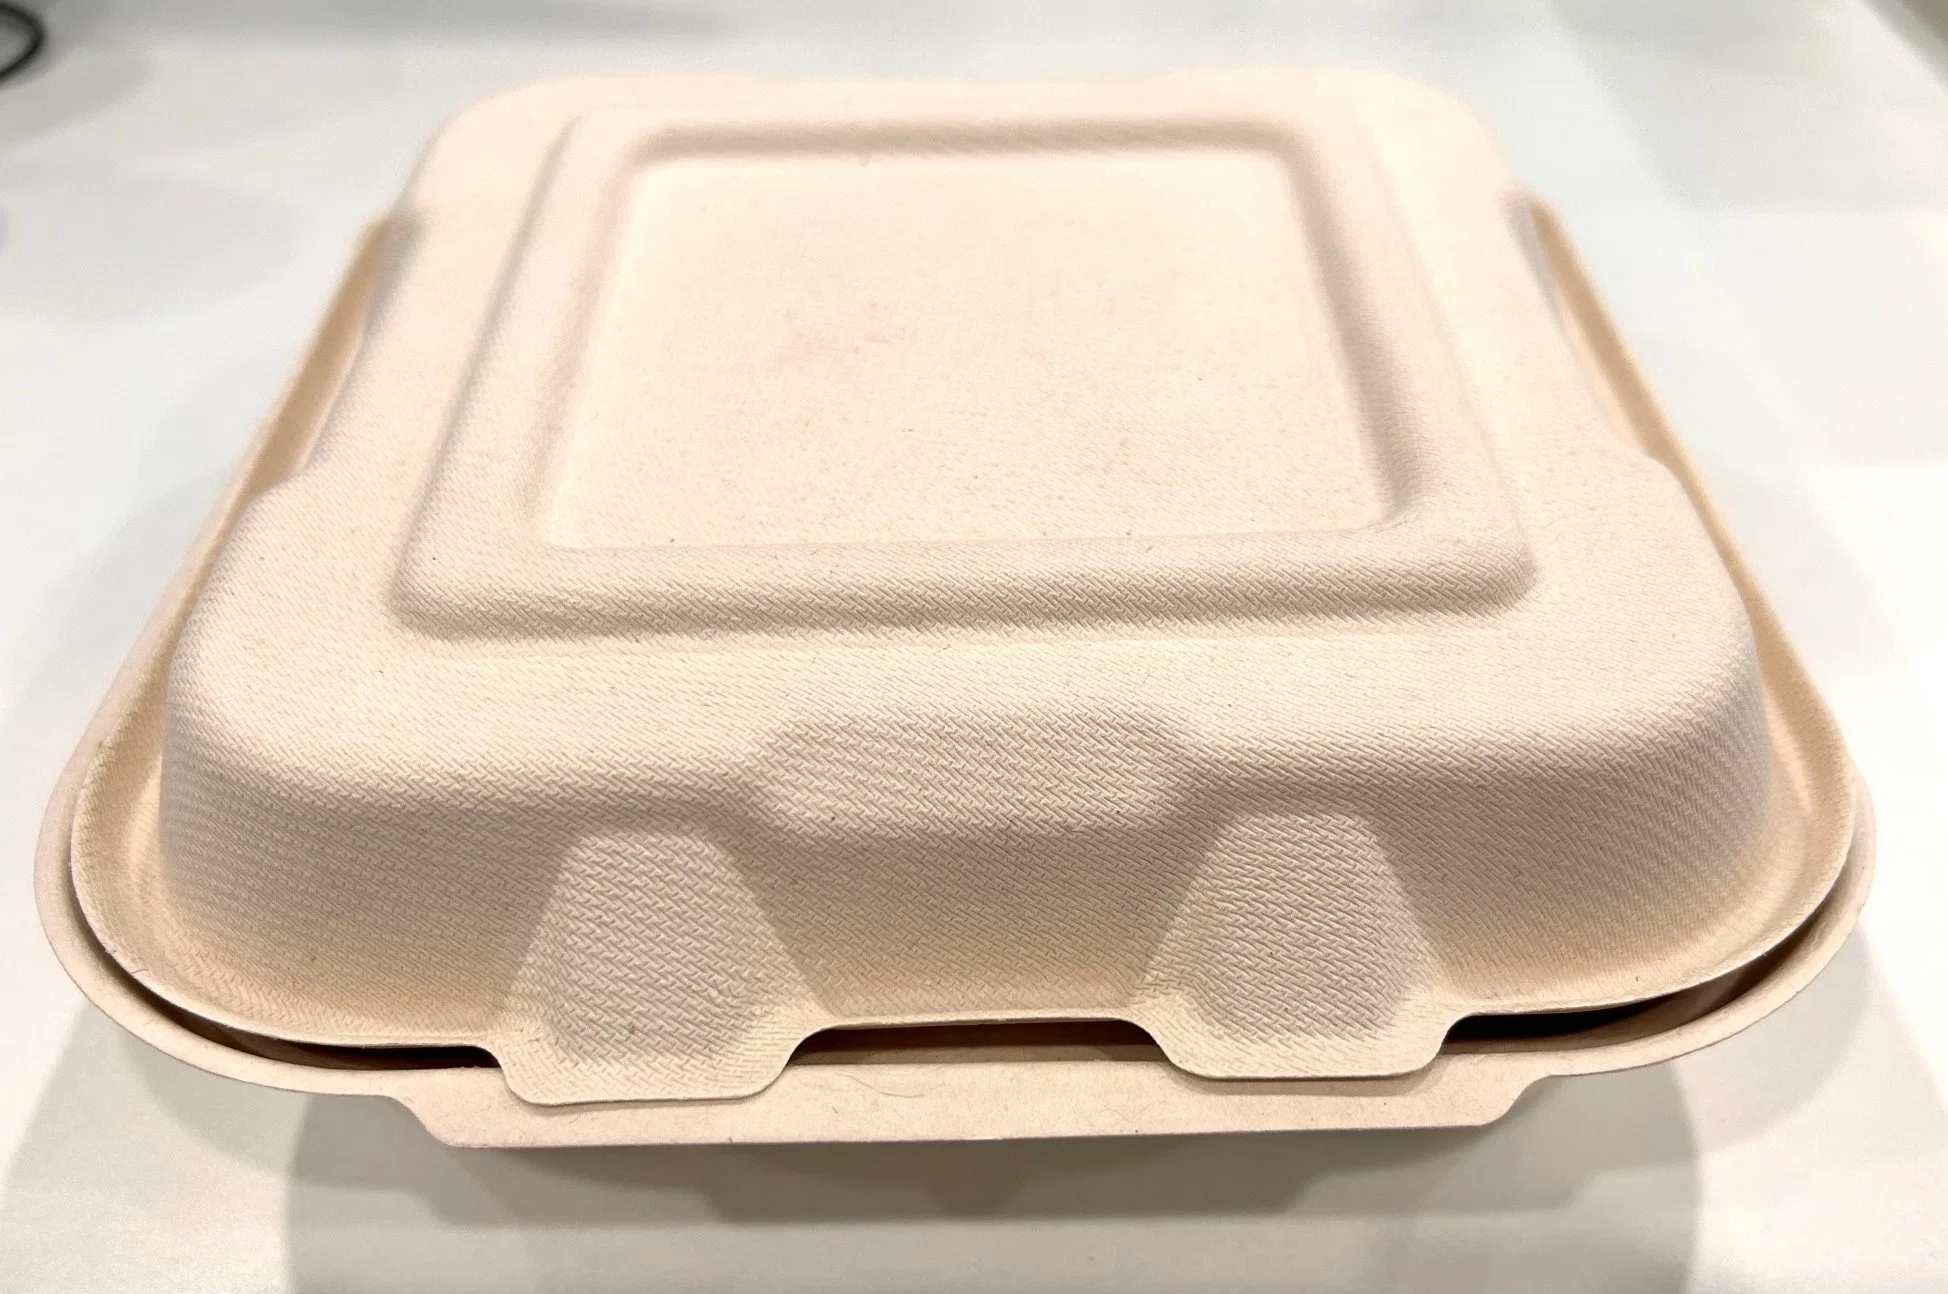 Boîte en carton / Contenant pour emballage alimentaire / Boîte de protection / Boîte à lunch